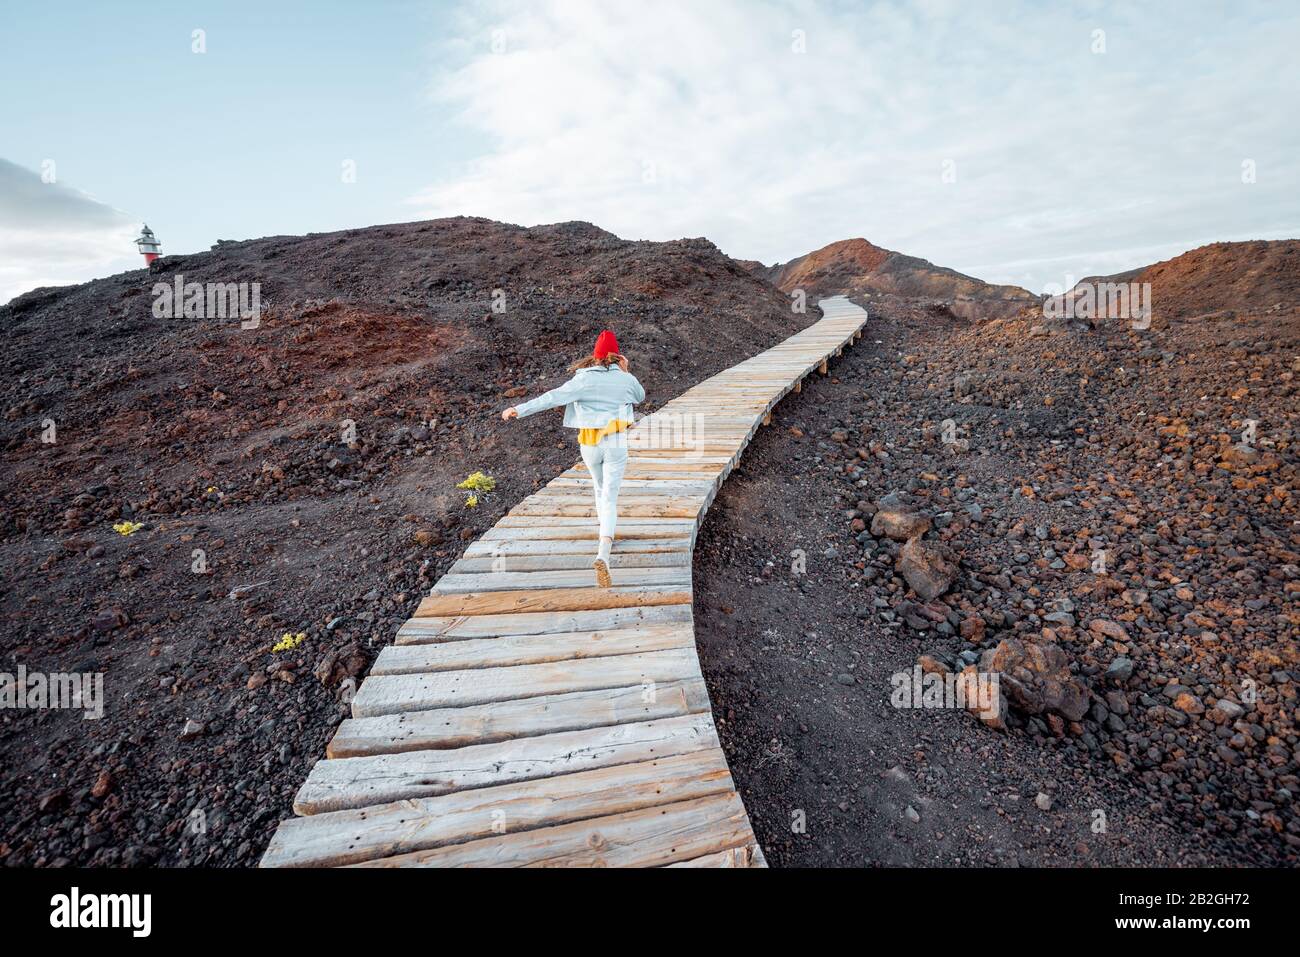 Frau, die auf der schönen Promenade durch das Vulkanland läuft und eine Reise auf der Insel genießt Stockfoto